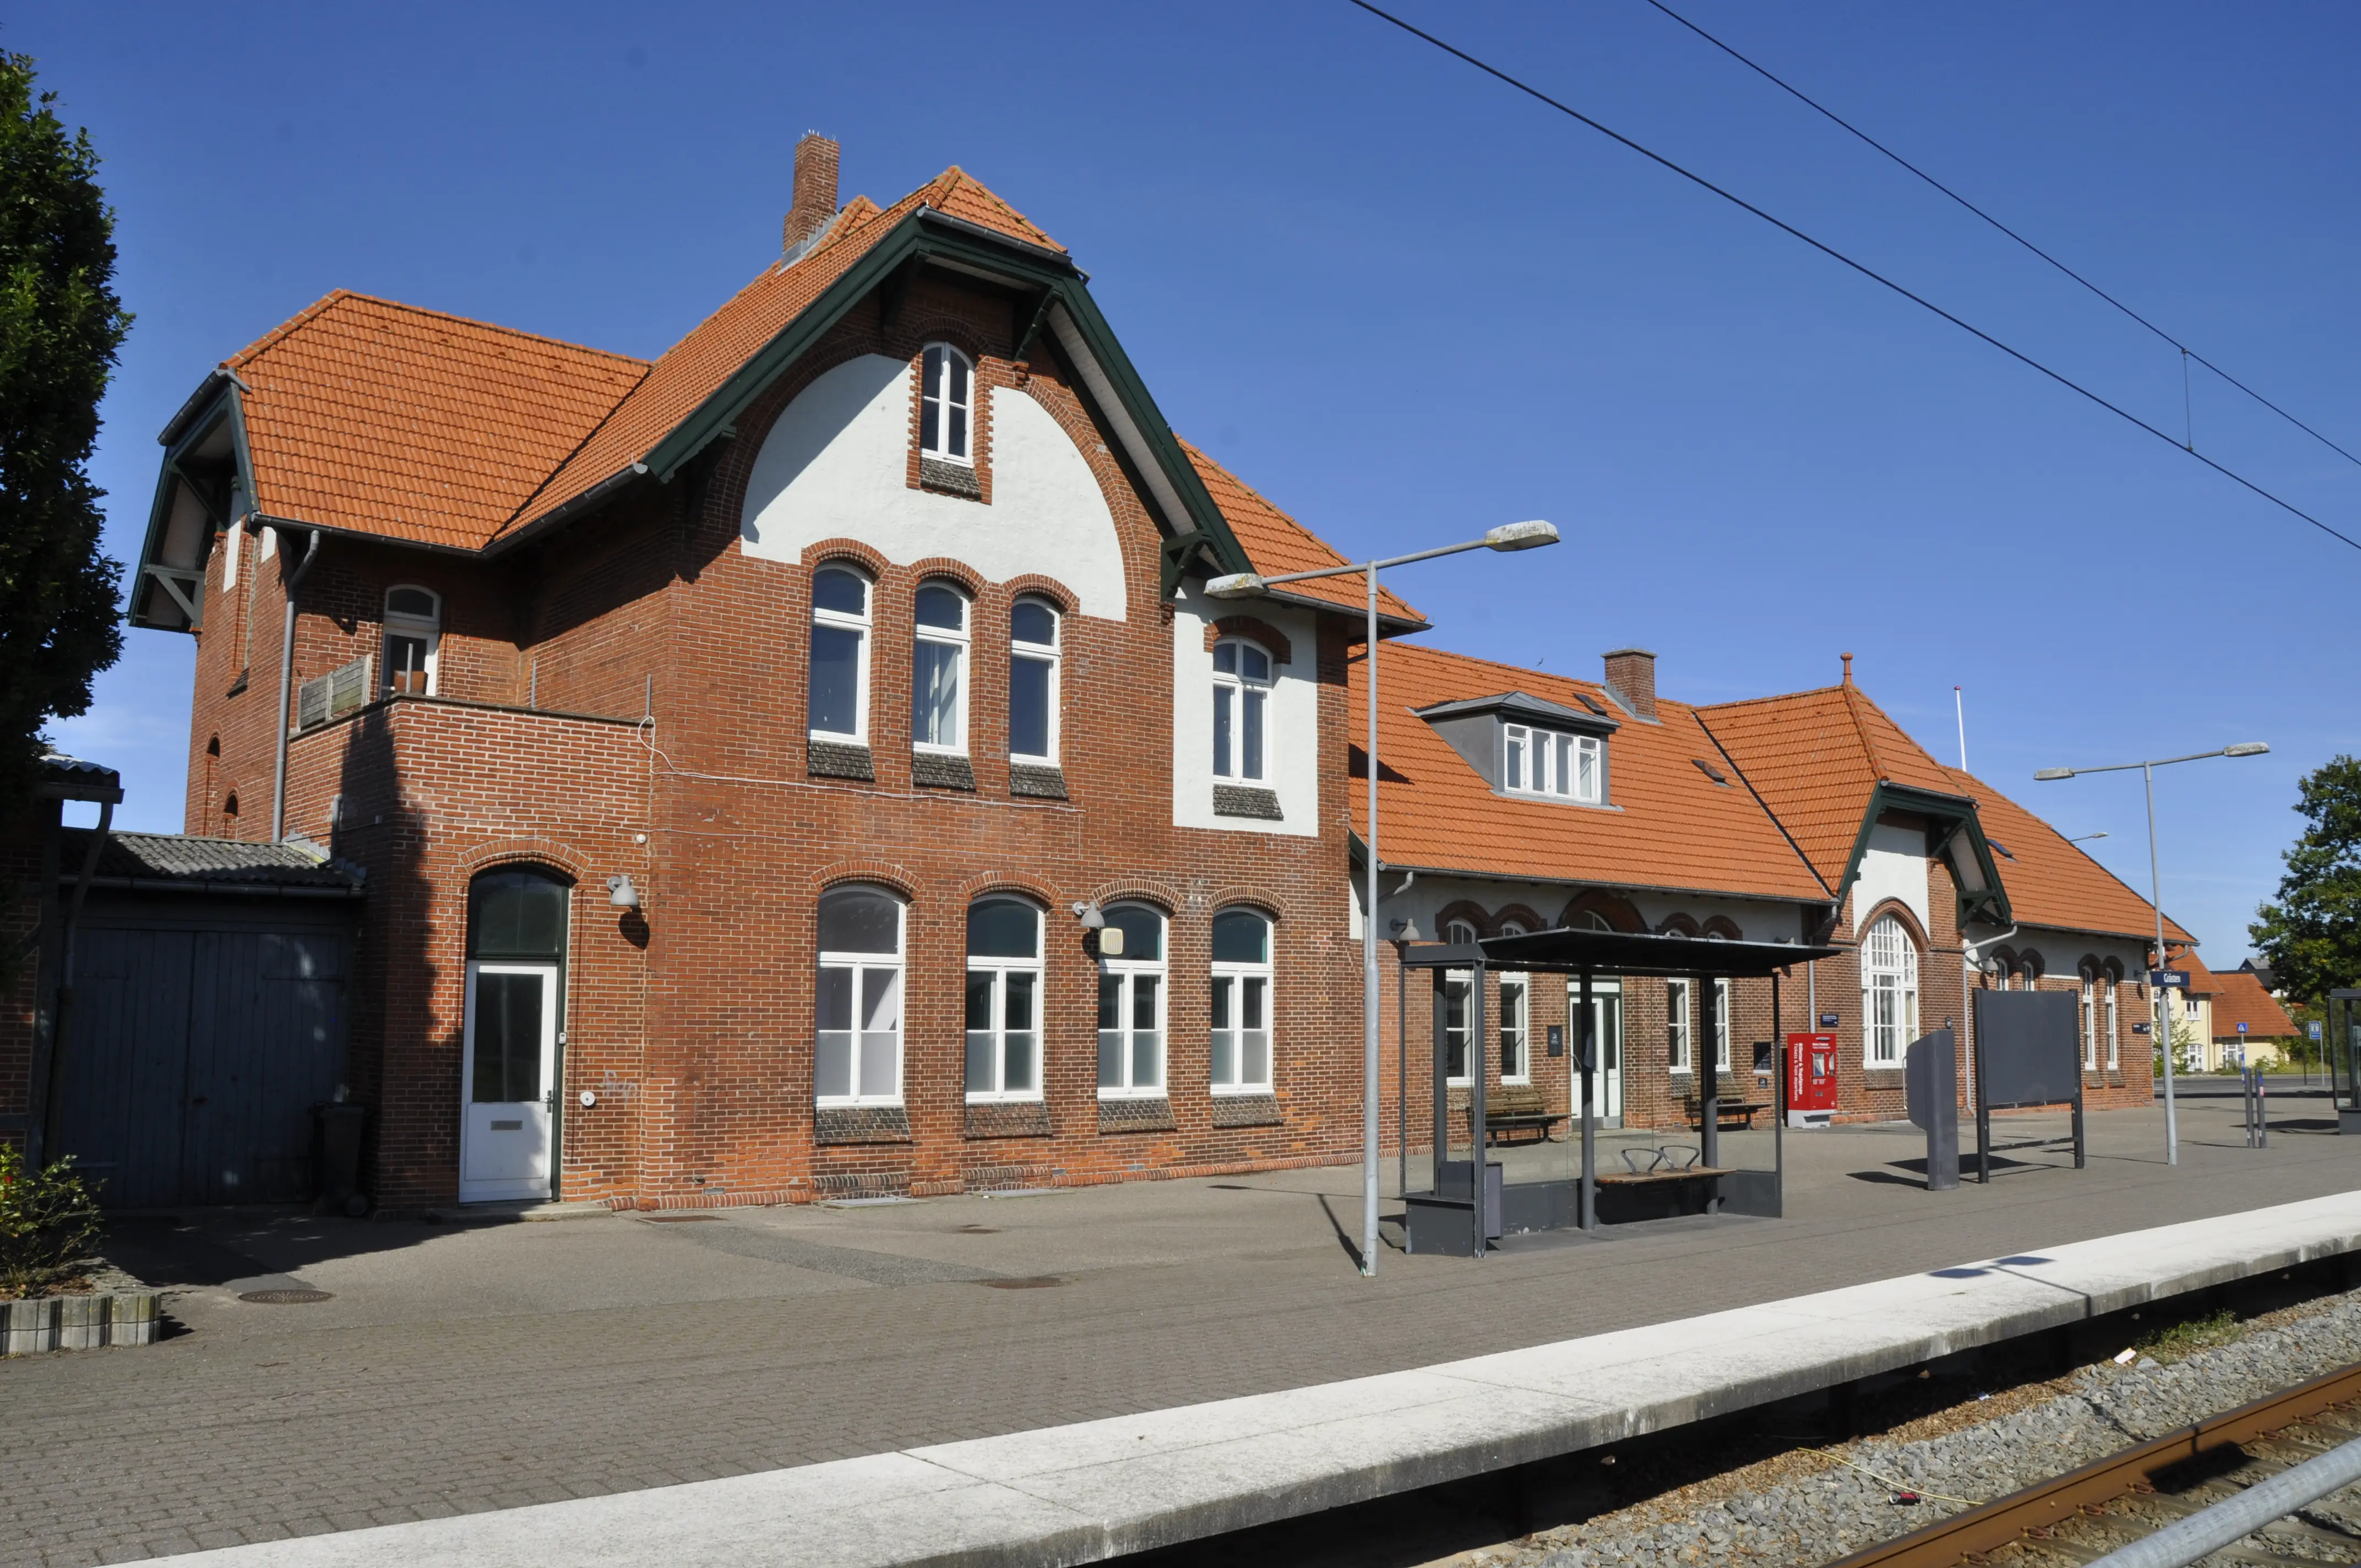 Billede af Gråsten Station.